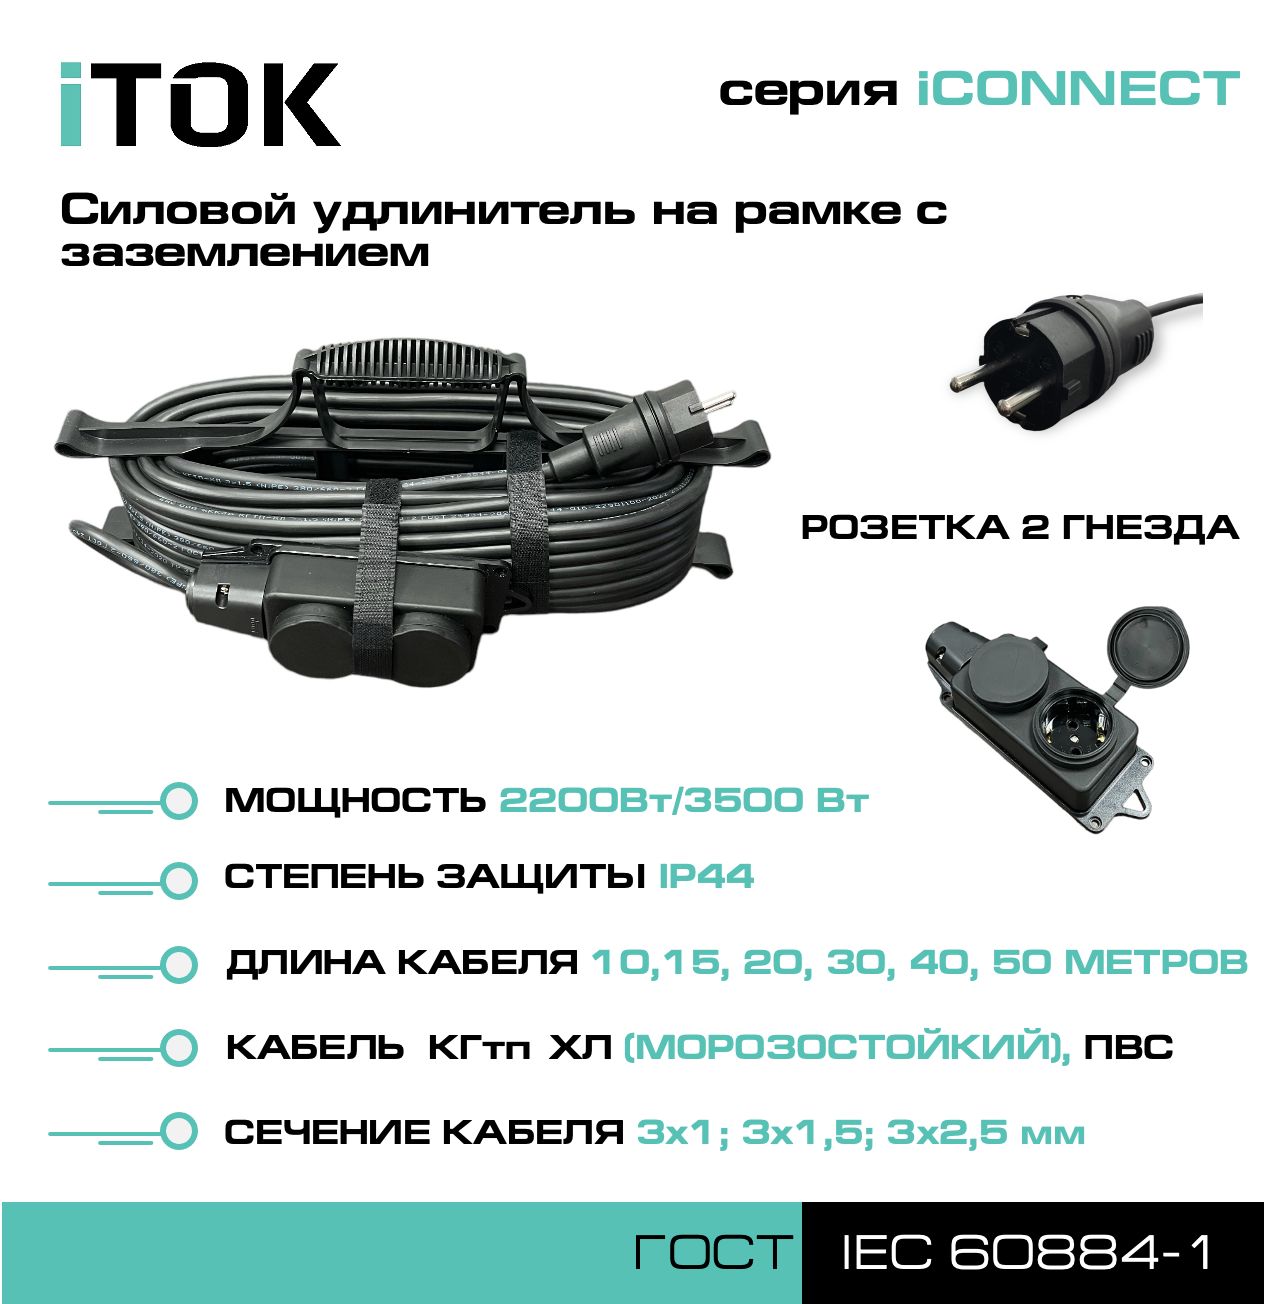 Удлинитель на рамке с заземлением серии iTOK iCONNECT КГтп-ХЛ 3х2,5 мм 2 гнезда IP44 10 м удлинитель navigator npe s 05 300 x 2x0 75 б з 5 гнезда 3м 71553